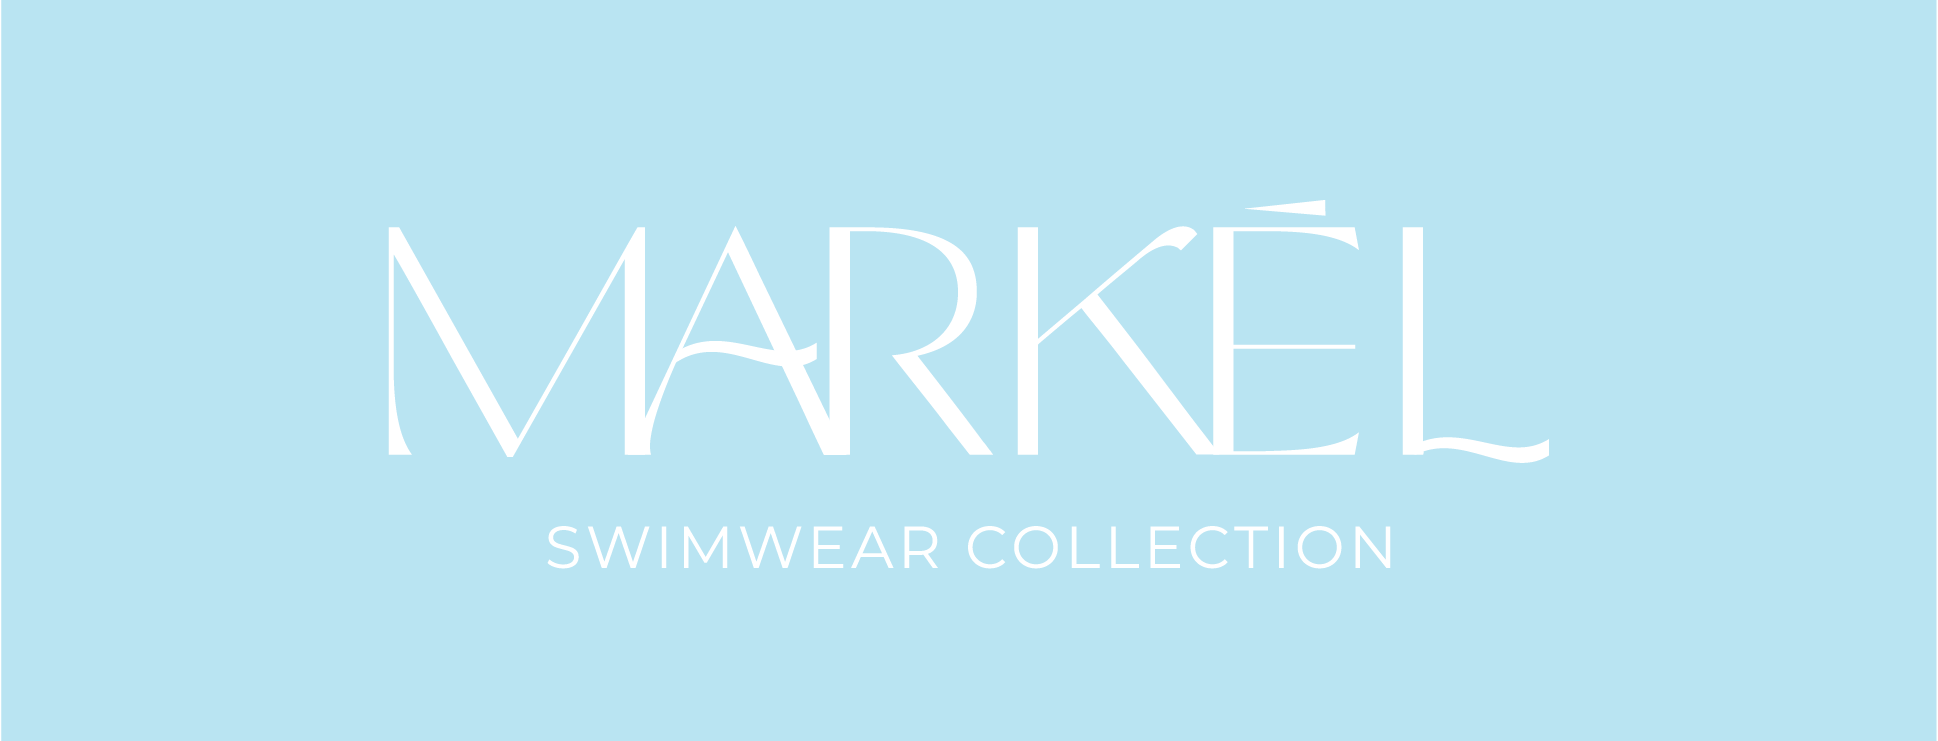 Markel Swimwear